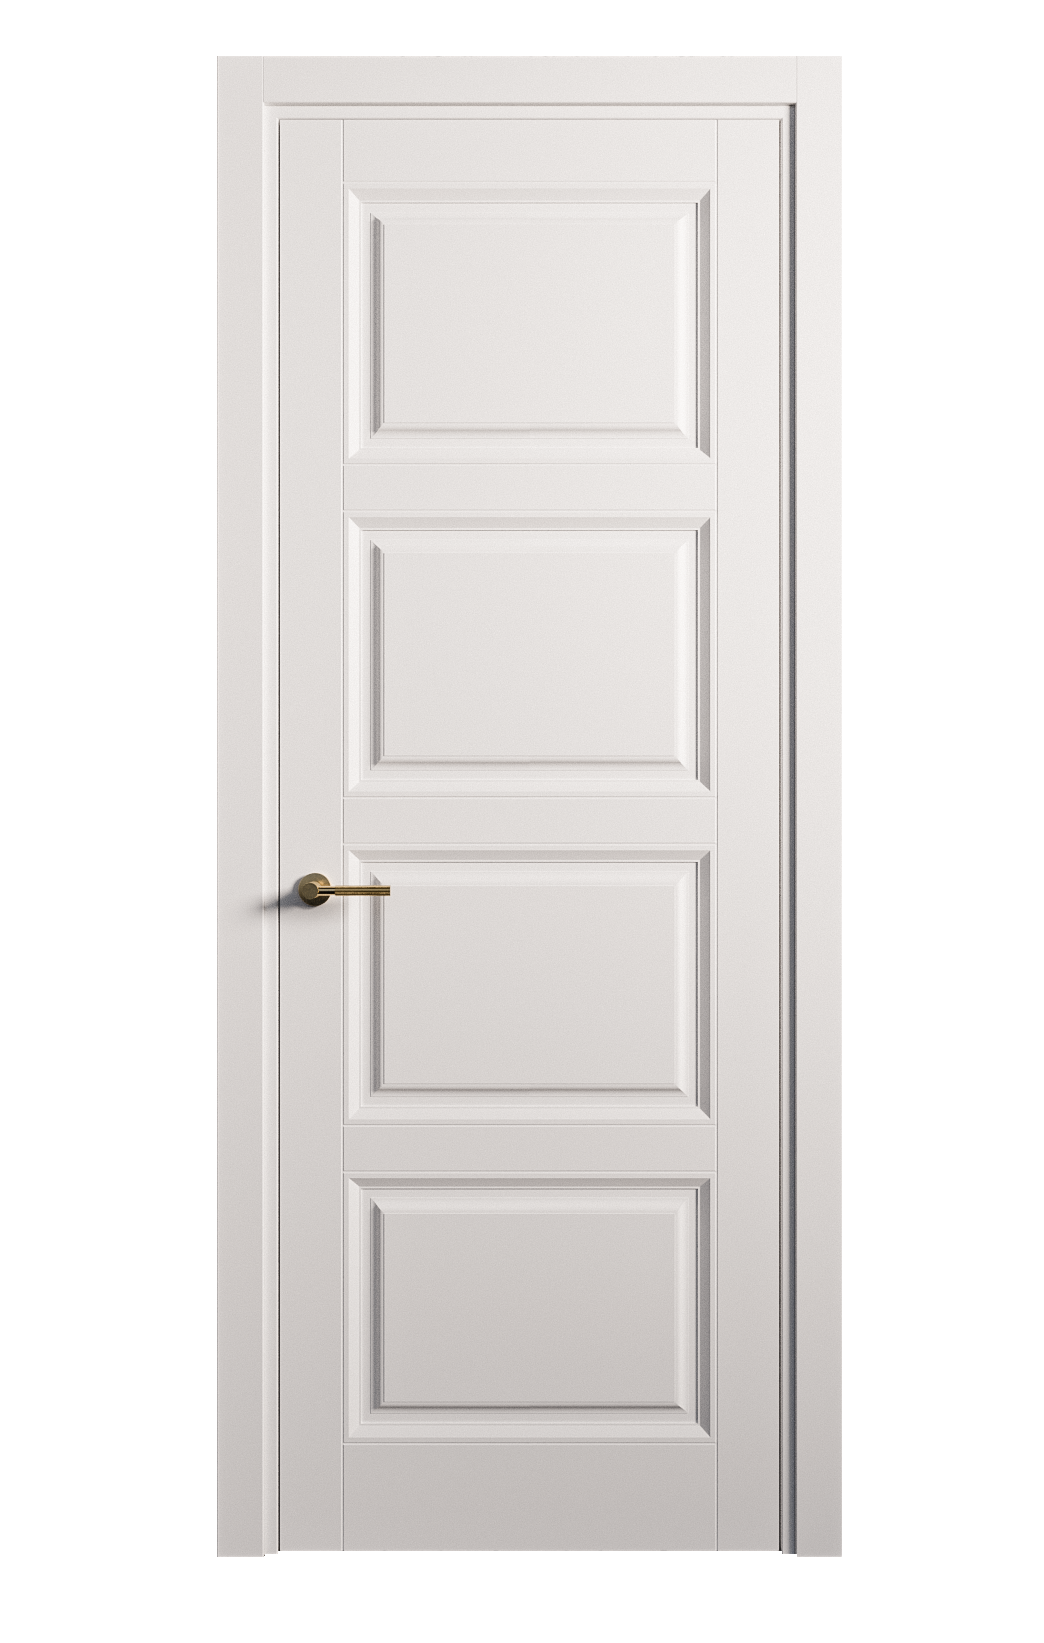 Межкомнатная дверь Venezia-4 глухая эмаль ral 9003 25821